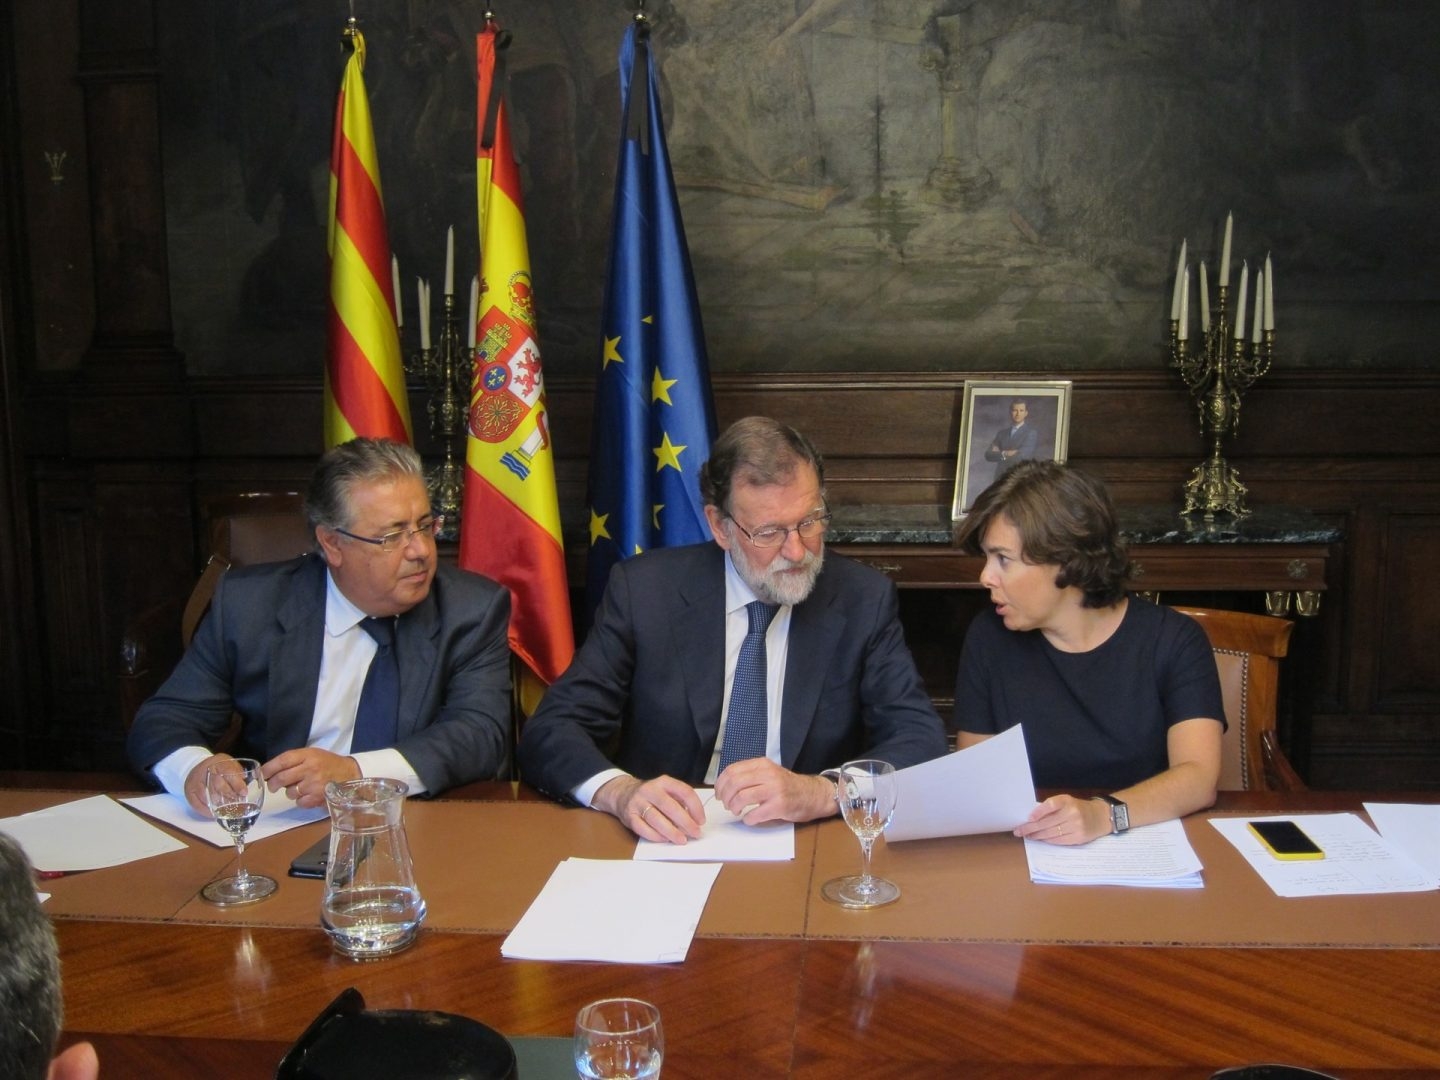 Reunión de Juan Ignacio Zoido, Mariano Rajoy y Soraya Sáenz de Santamaría.